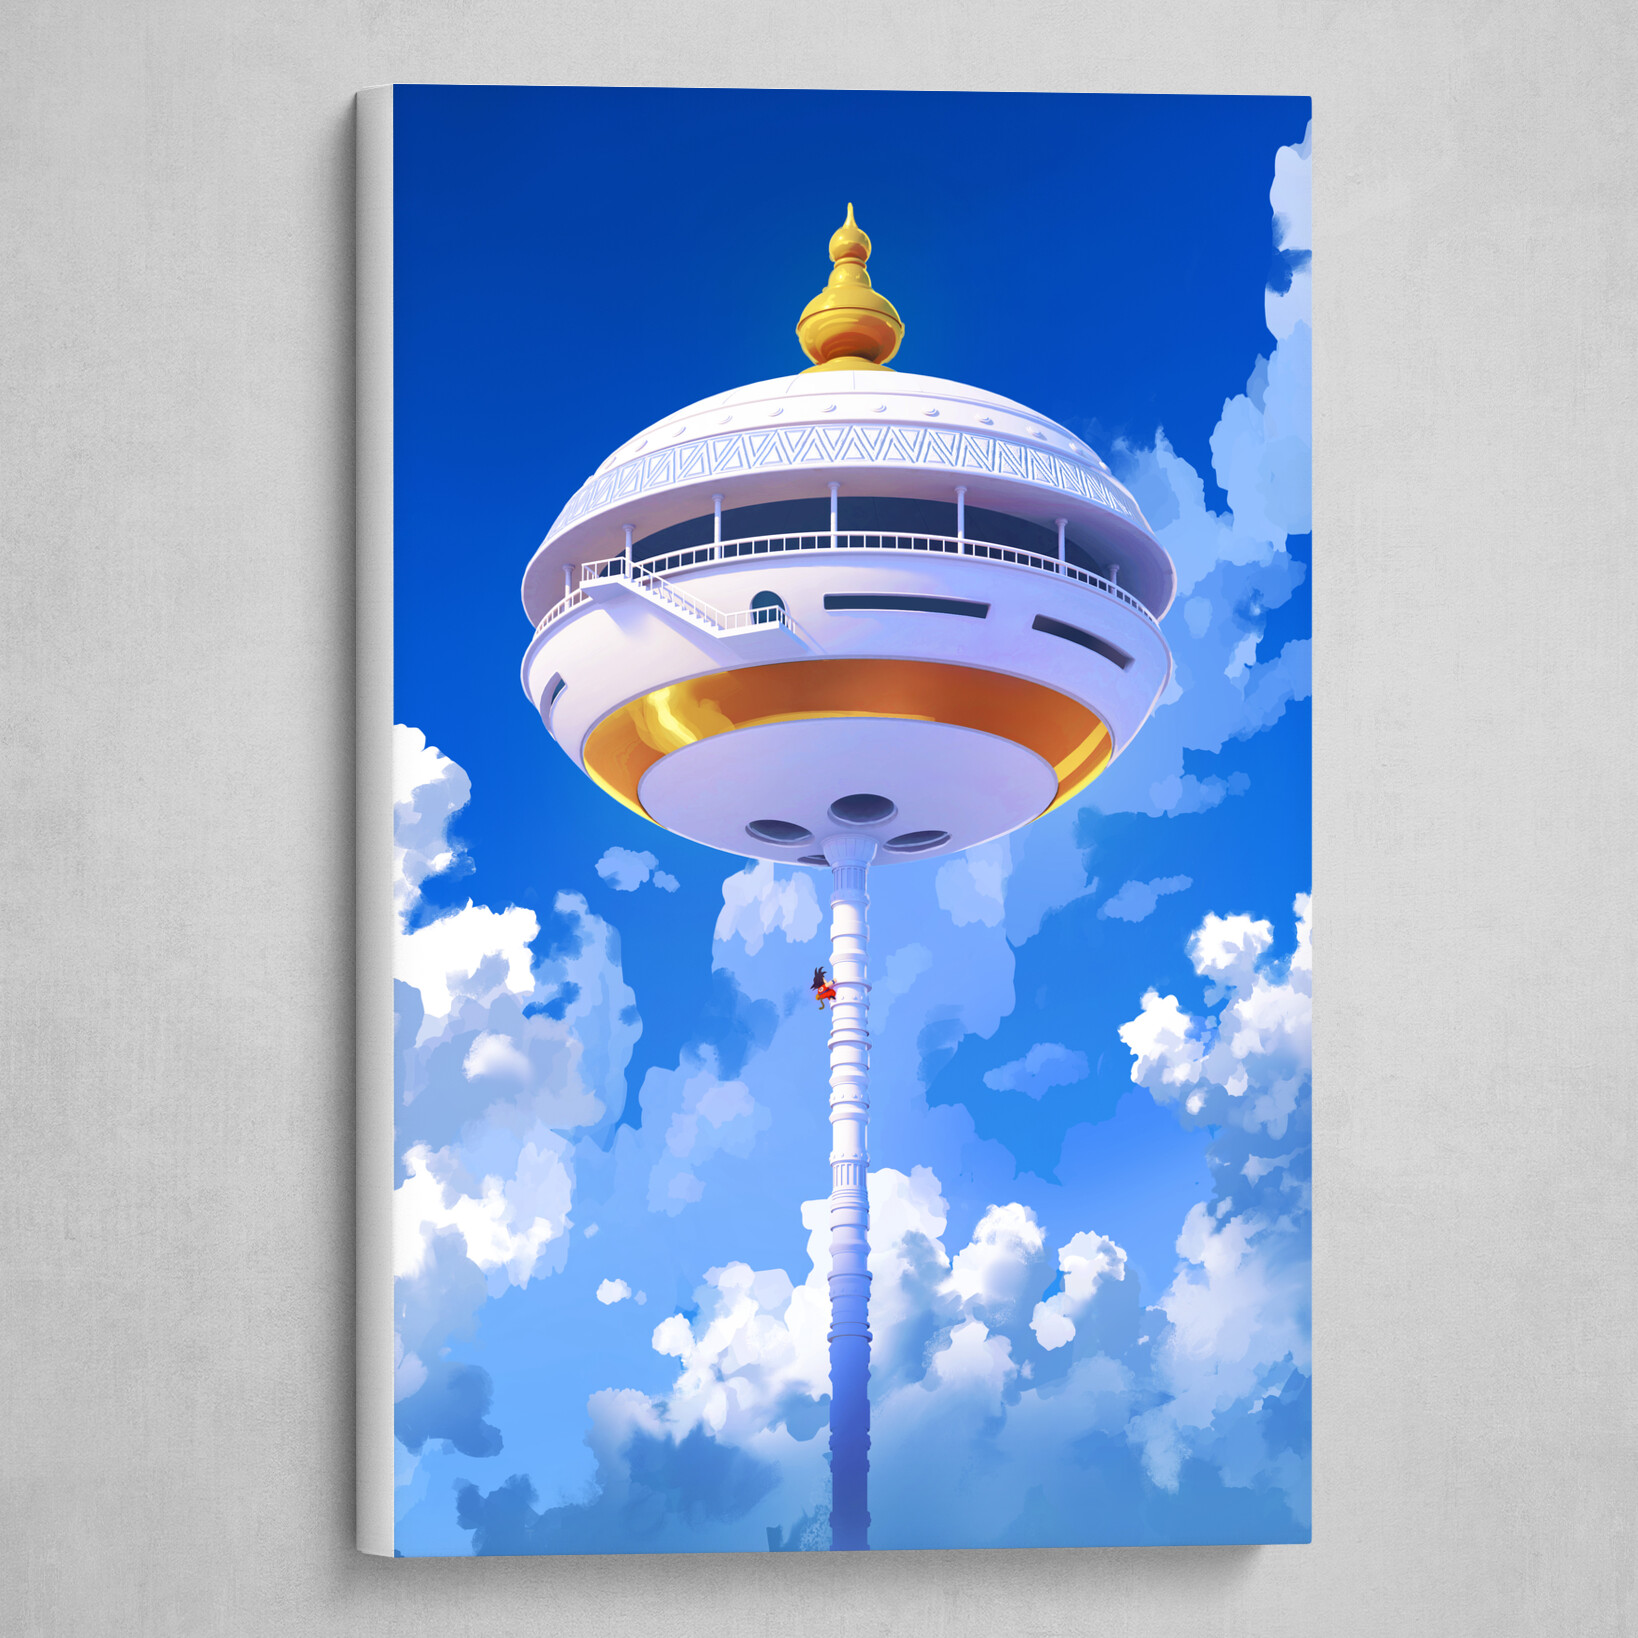 Картина на холсте: Башня Карин - интернет магазин картин 47art.ru